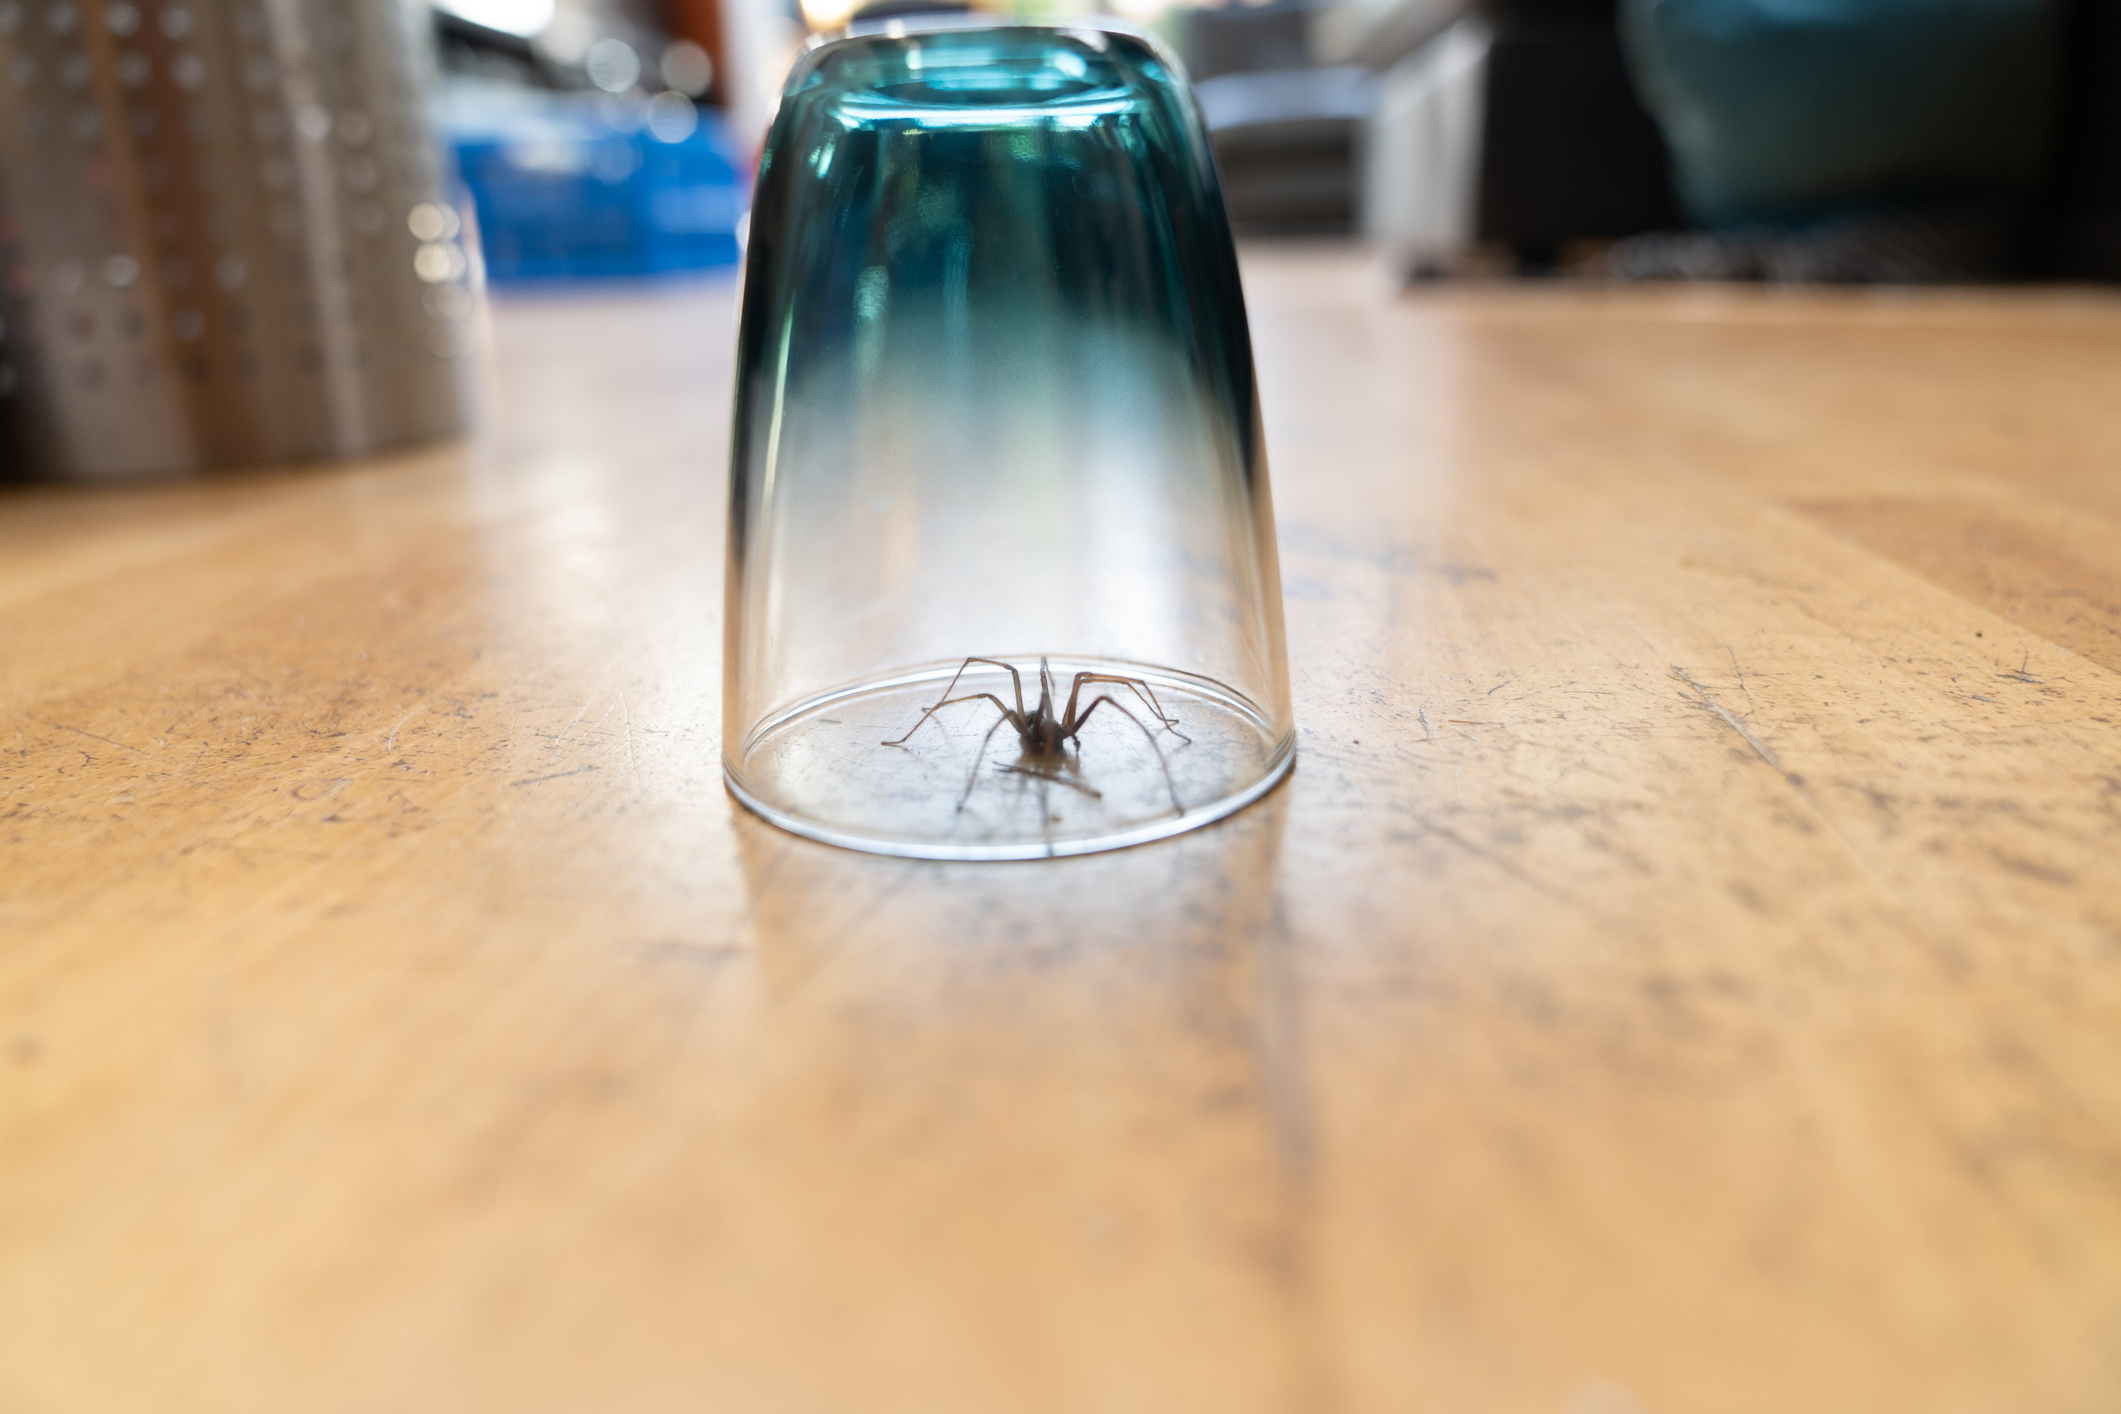 trap spider under glass